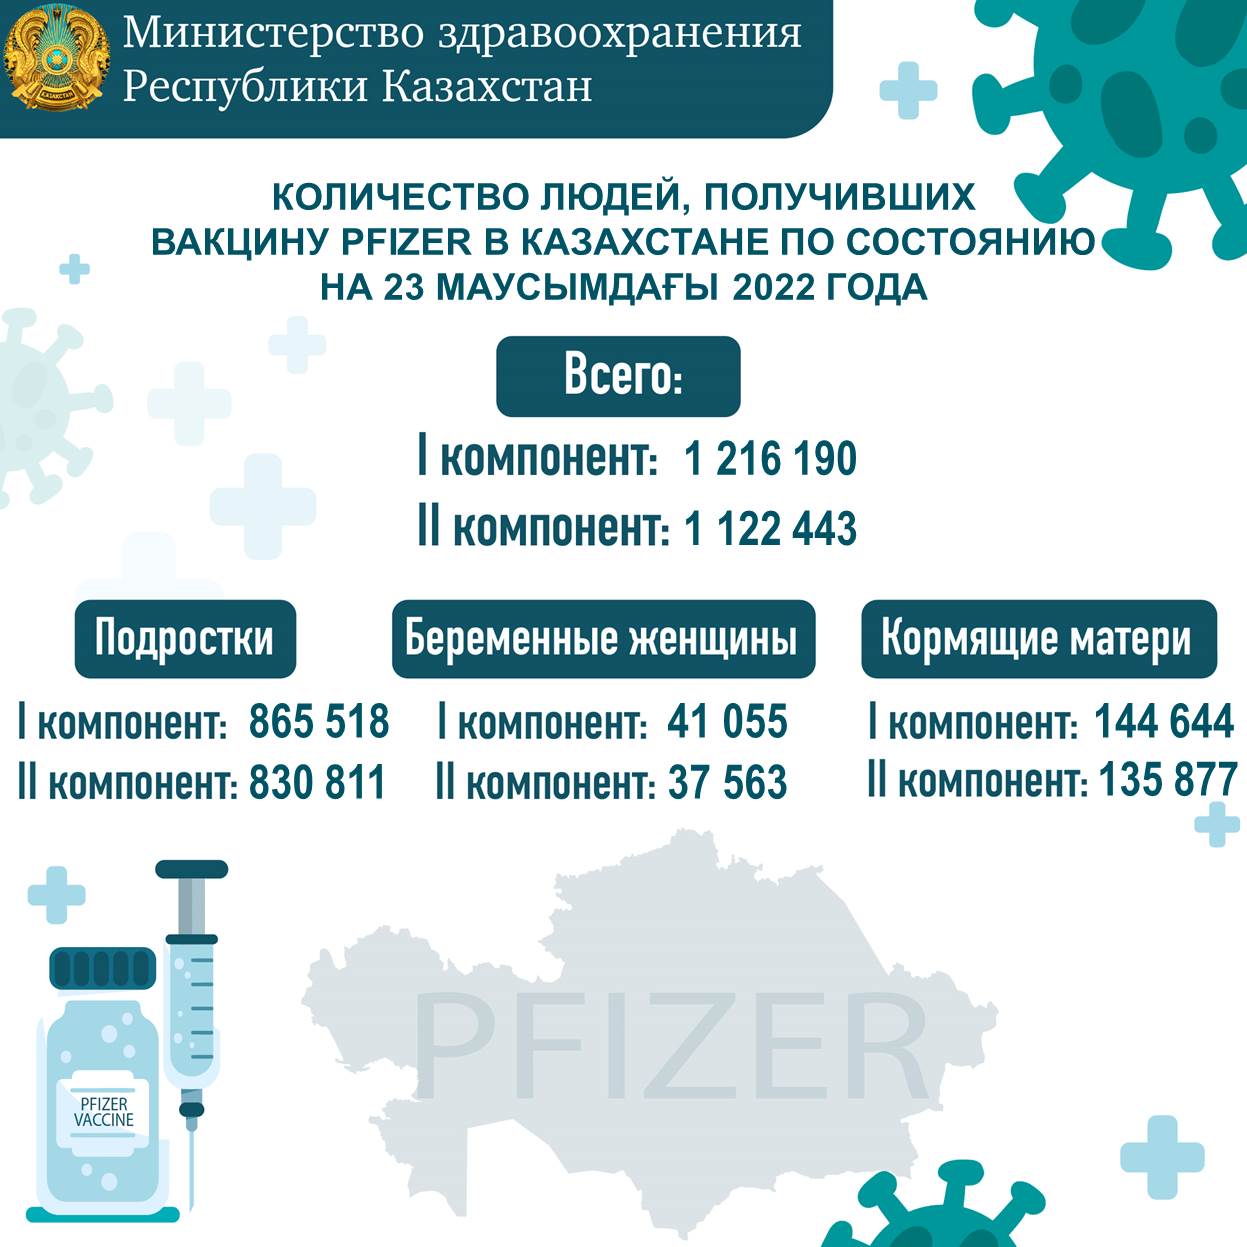 Количество людей, получивших вакцину Рfizer в Казахстане по состоянию на 23 июня 2022 года